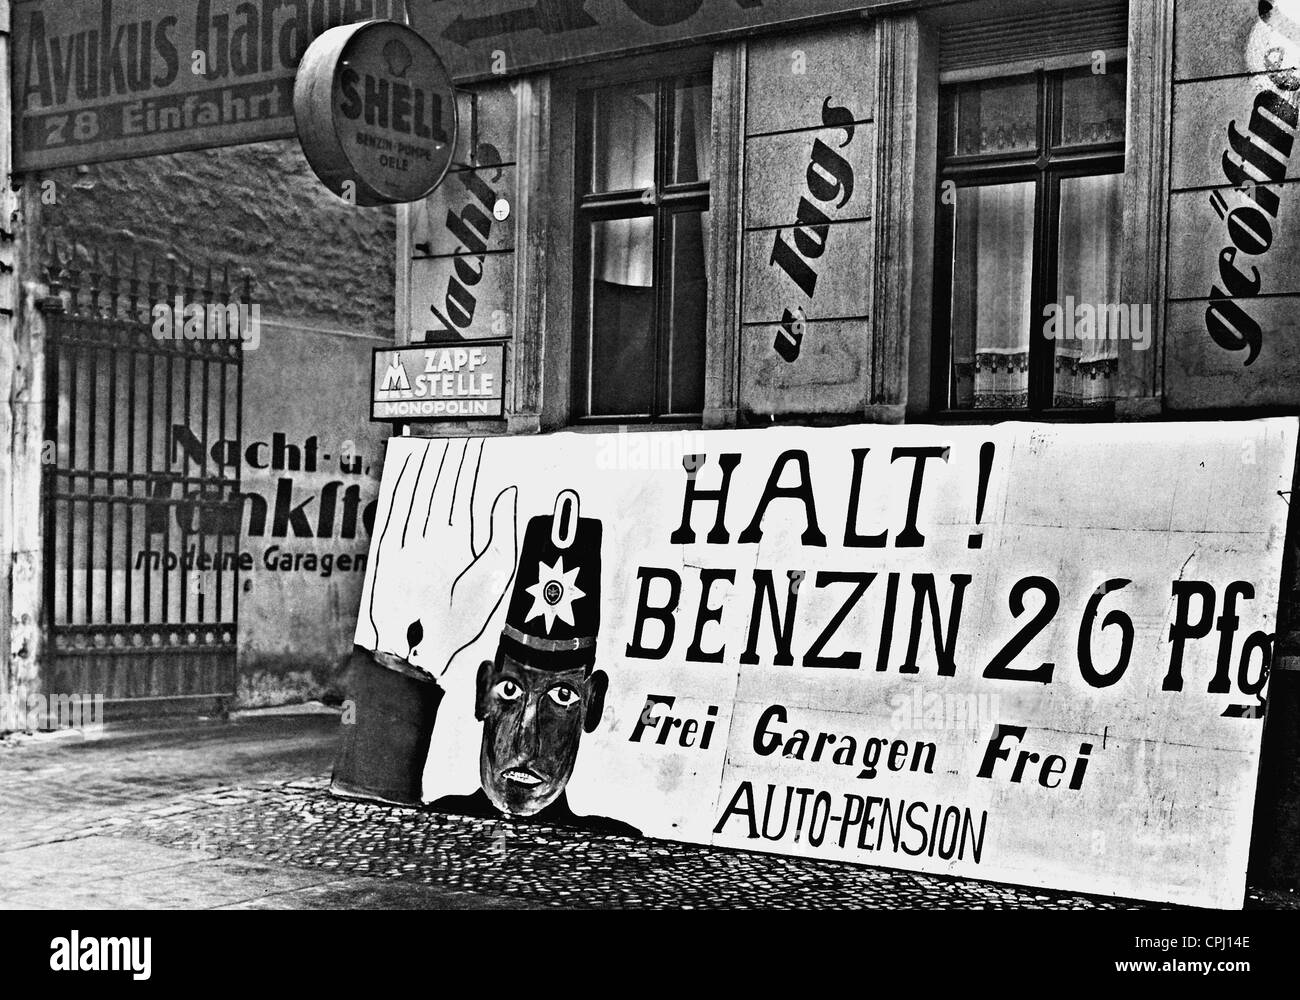 Tankstelle-Anzeige in Berlin, 1930 Stockfoto